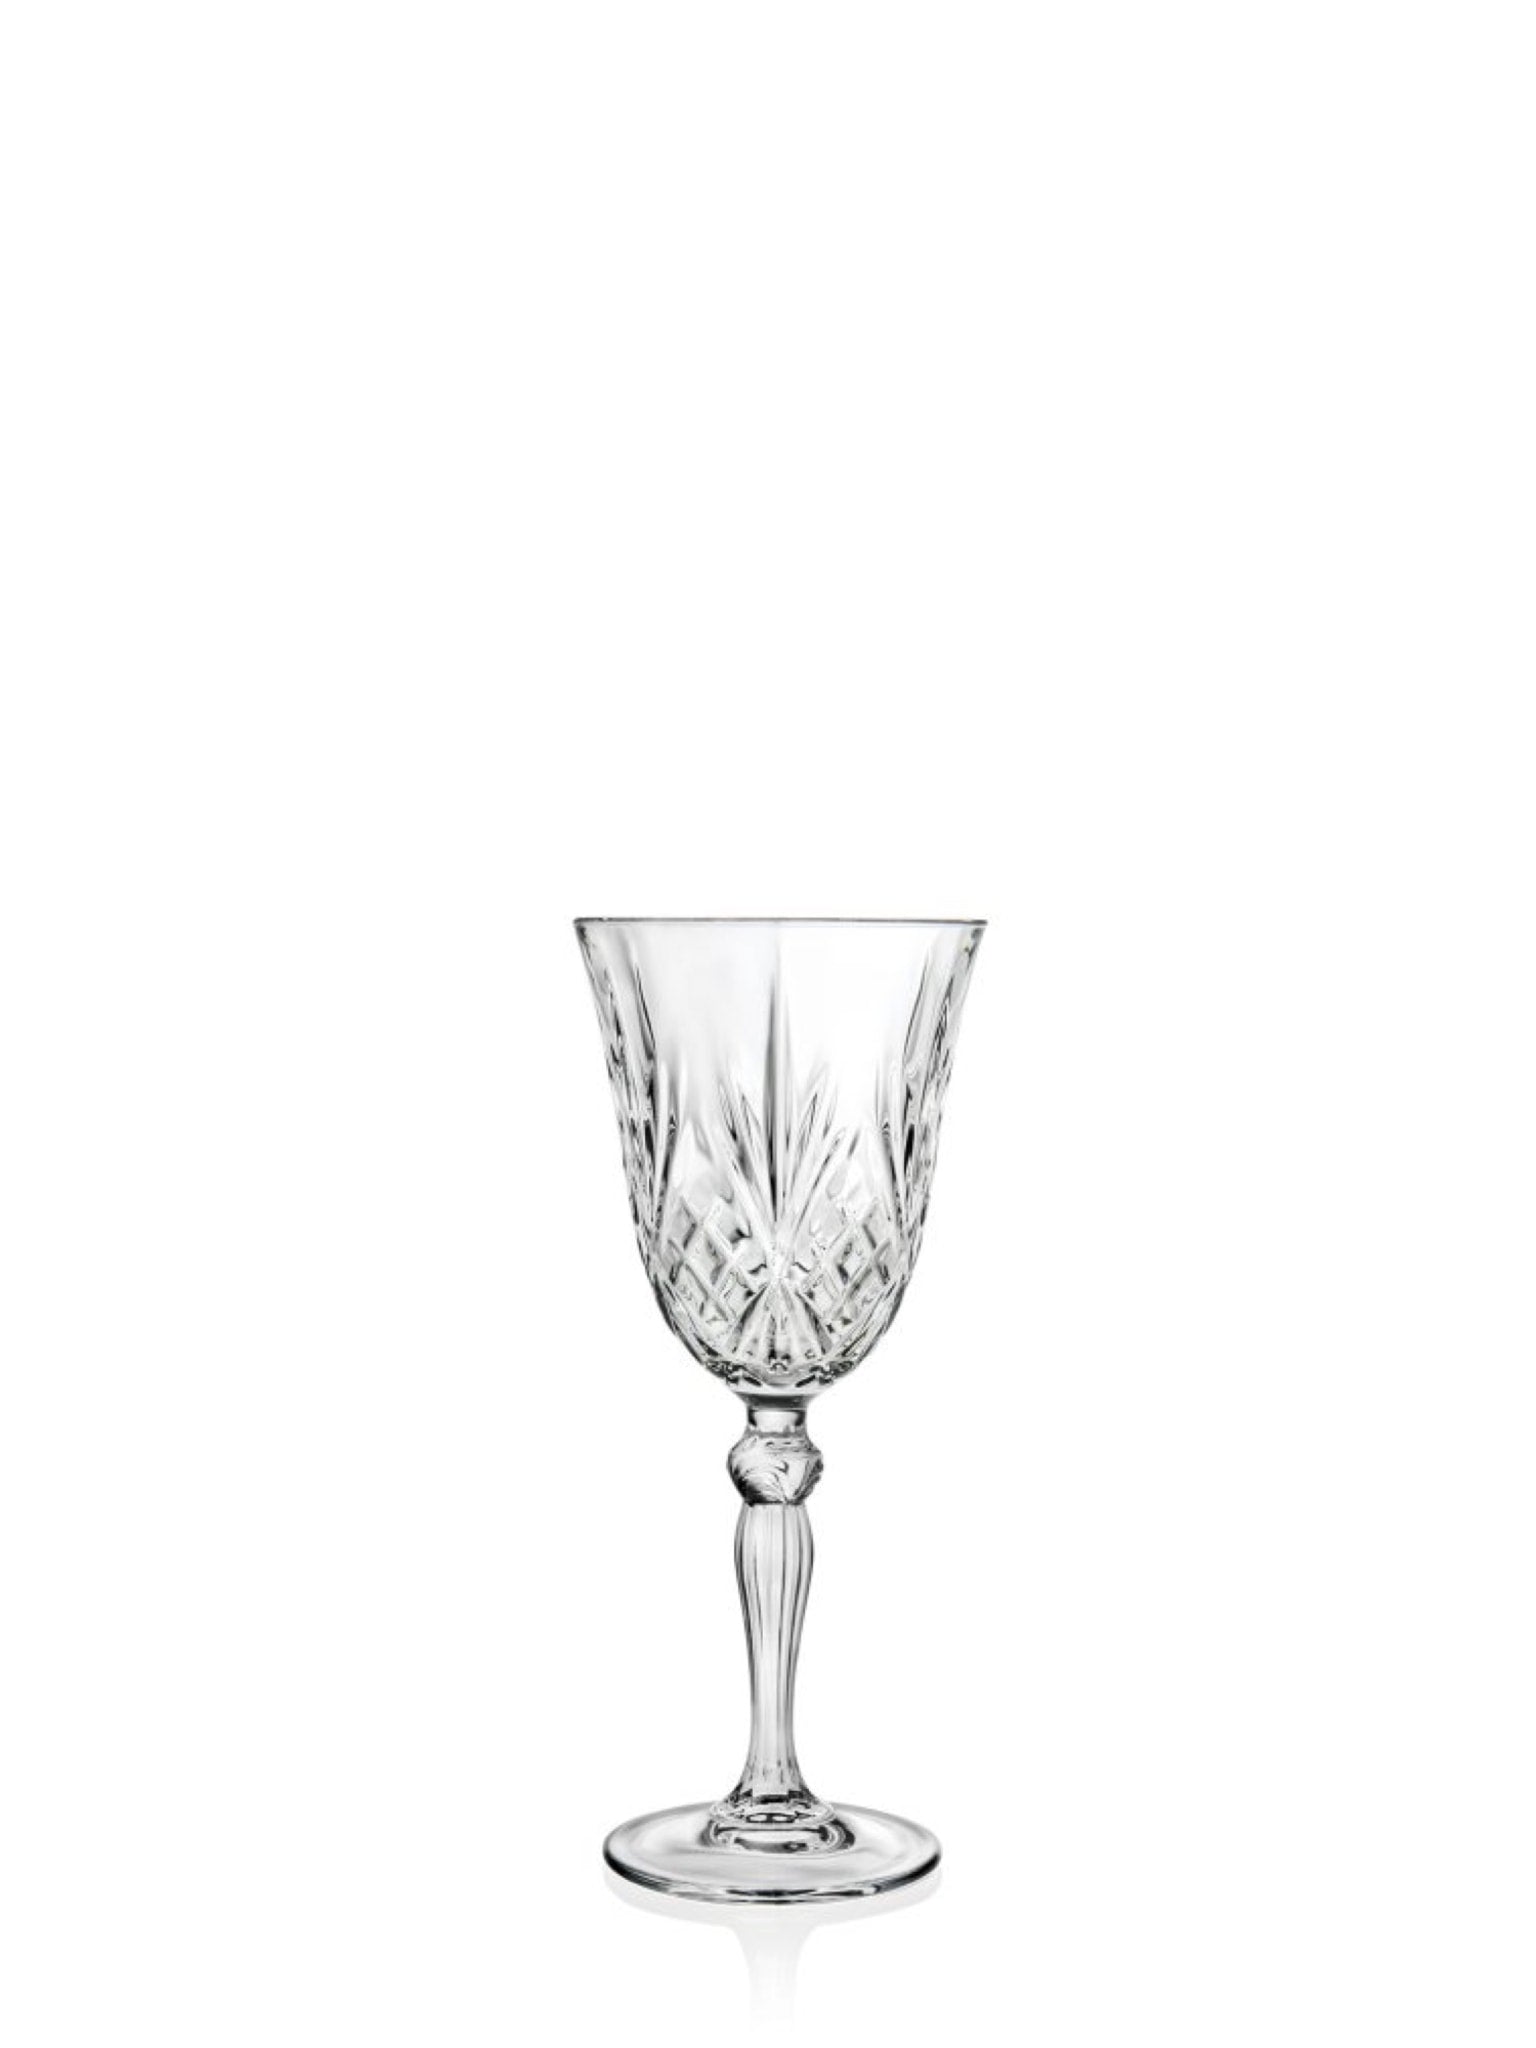 RCR Melodia Hvidvinglas - et elegant valg til din foretrukne hvidvin, med stilfuldt design og holdbart krystal.